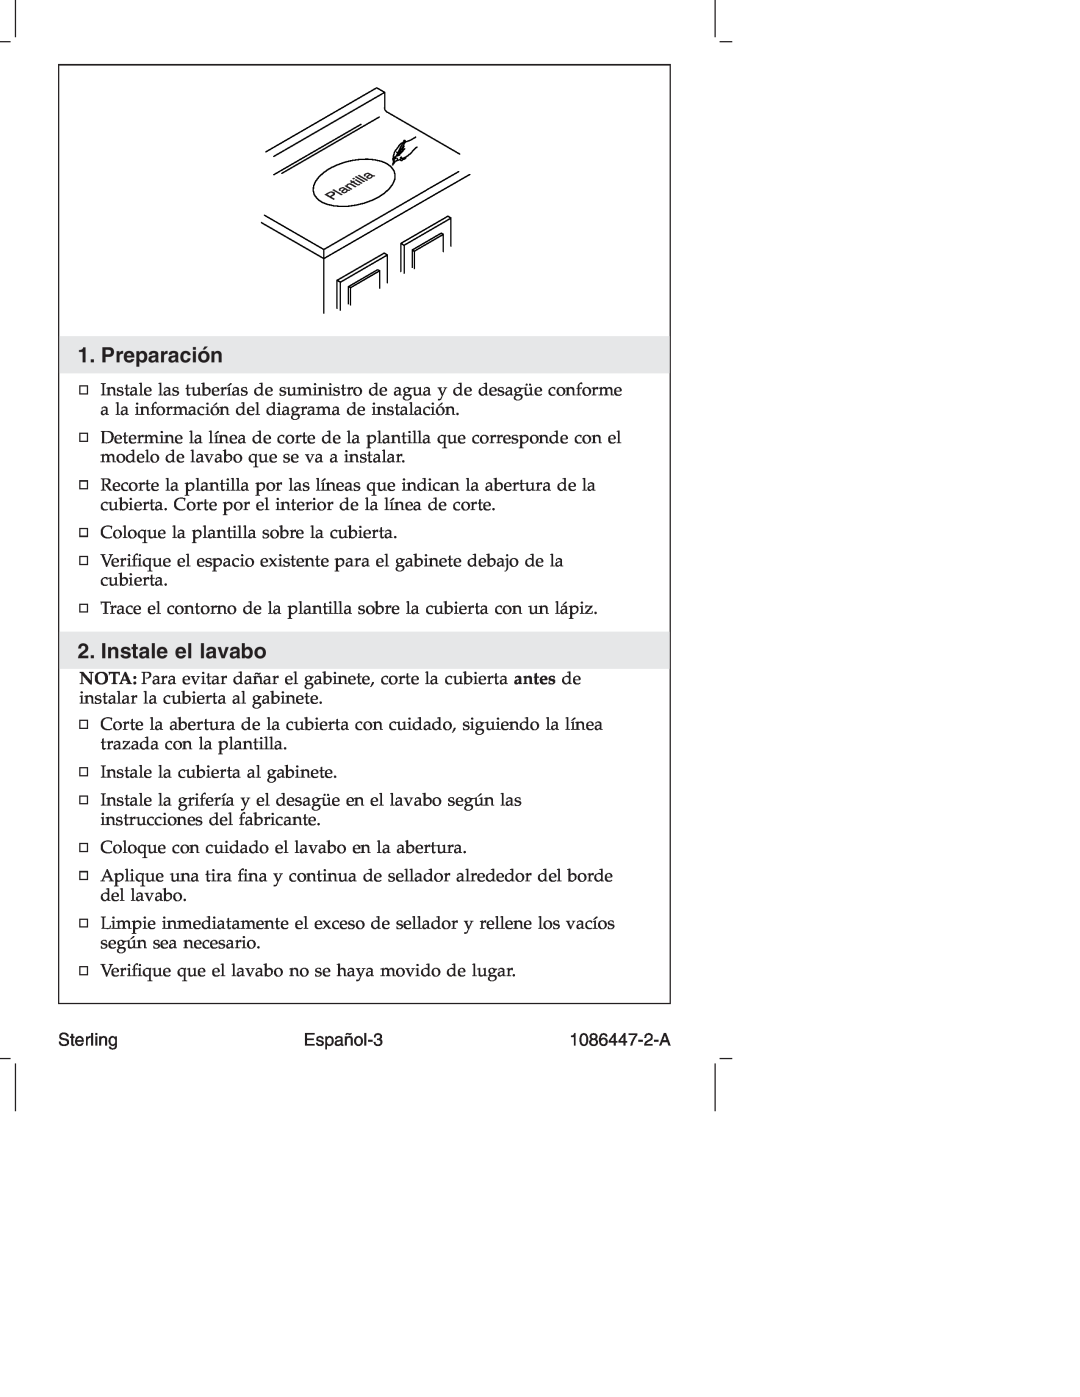 Sterling 1086447-2-A manual Preparación, Instale el lavabo, Español-3, Sterling 